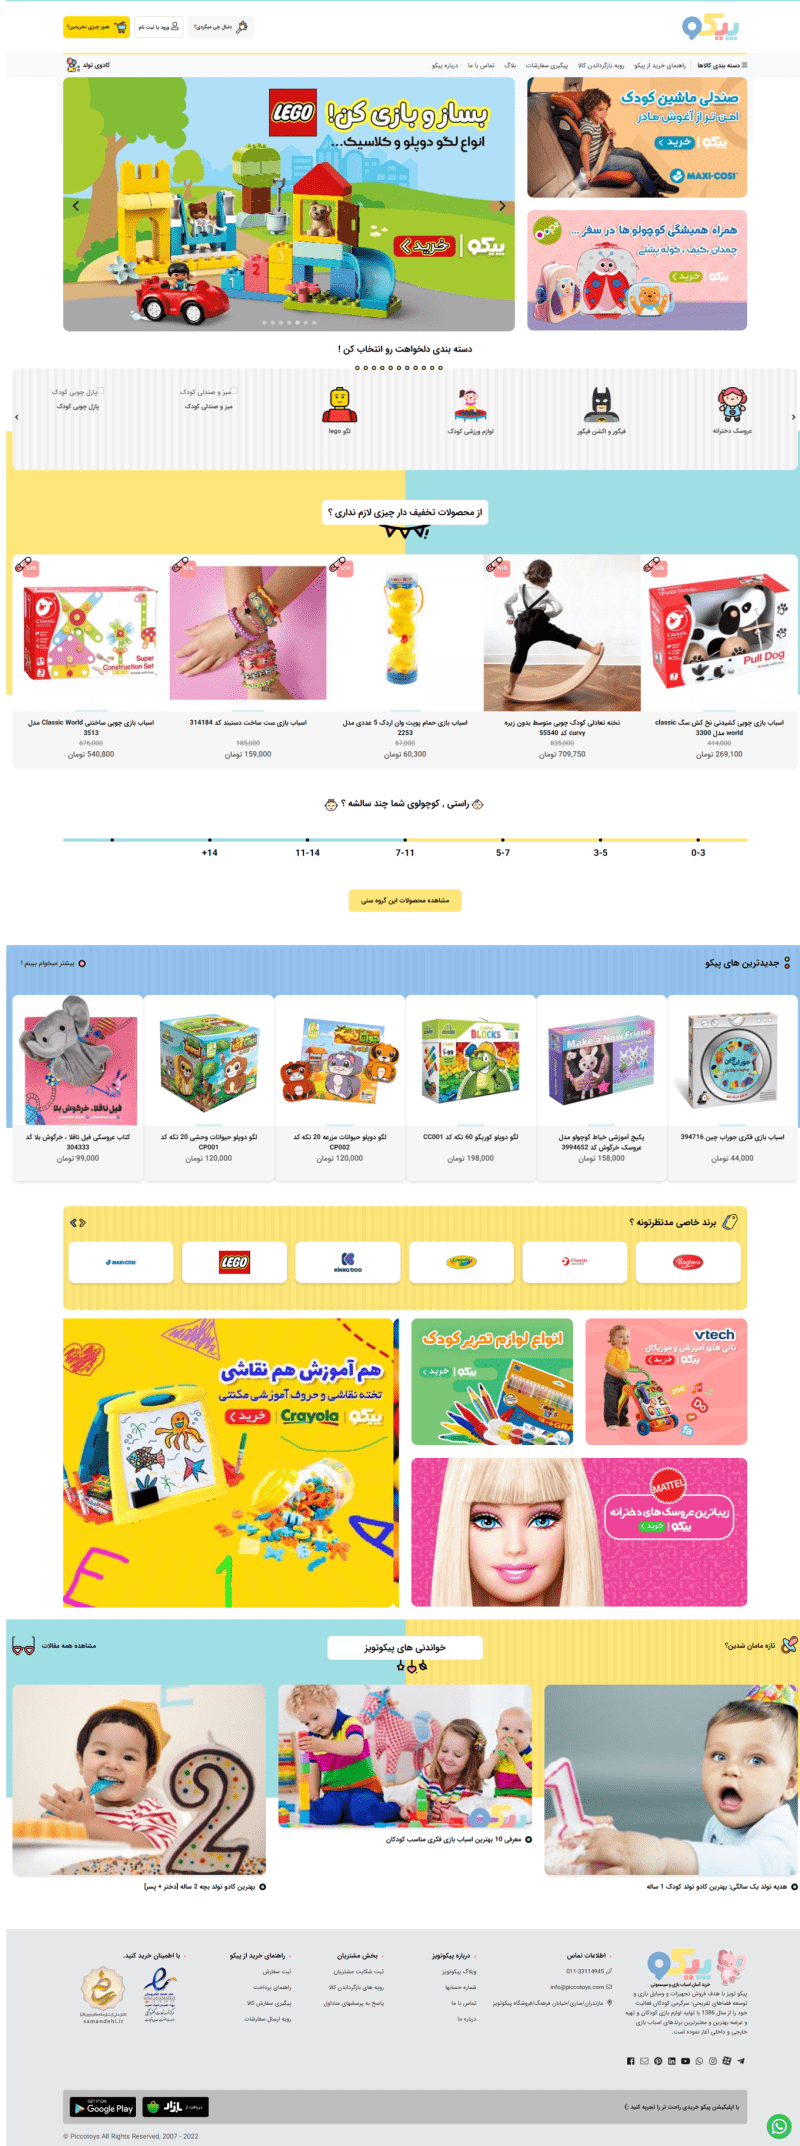 خرید اسباب بازی آنلاین: فروشگاه اسباب بازی اینترنتی کودک